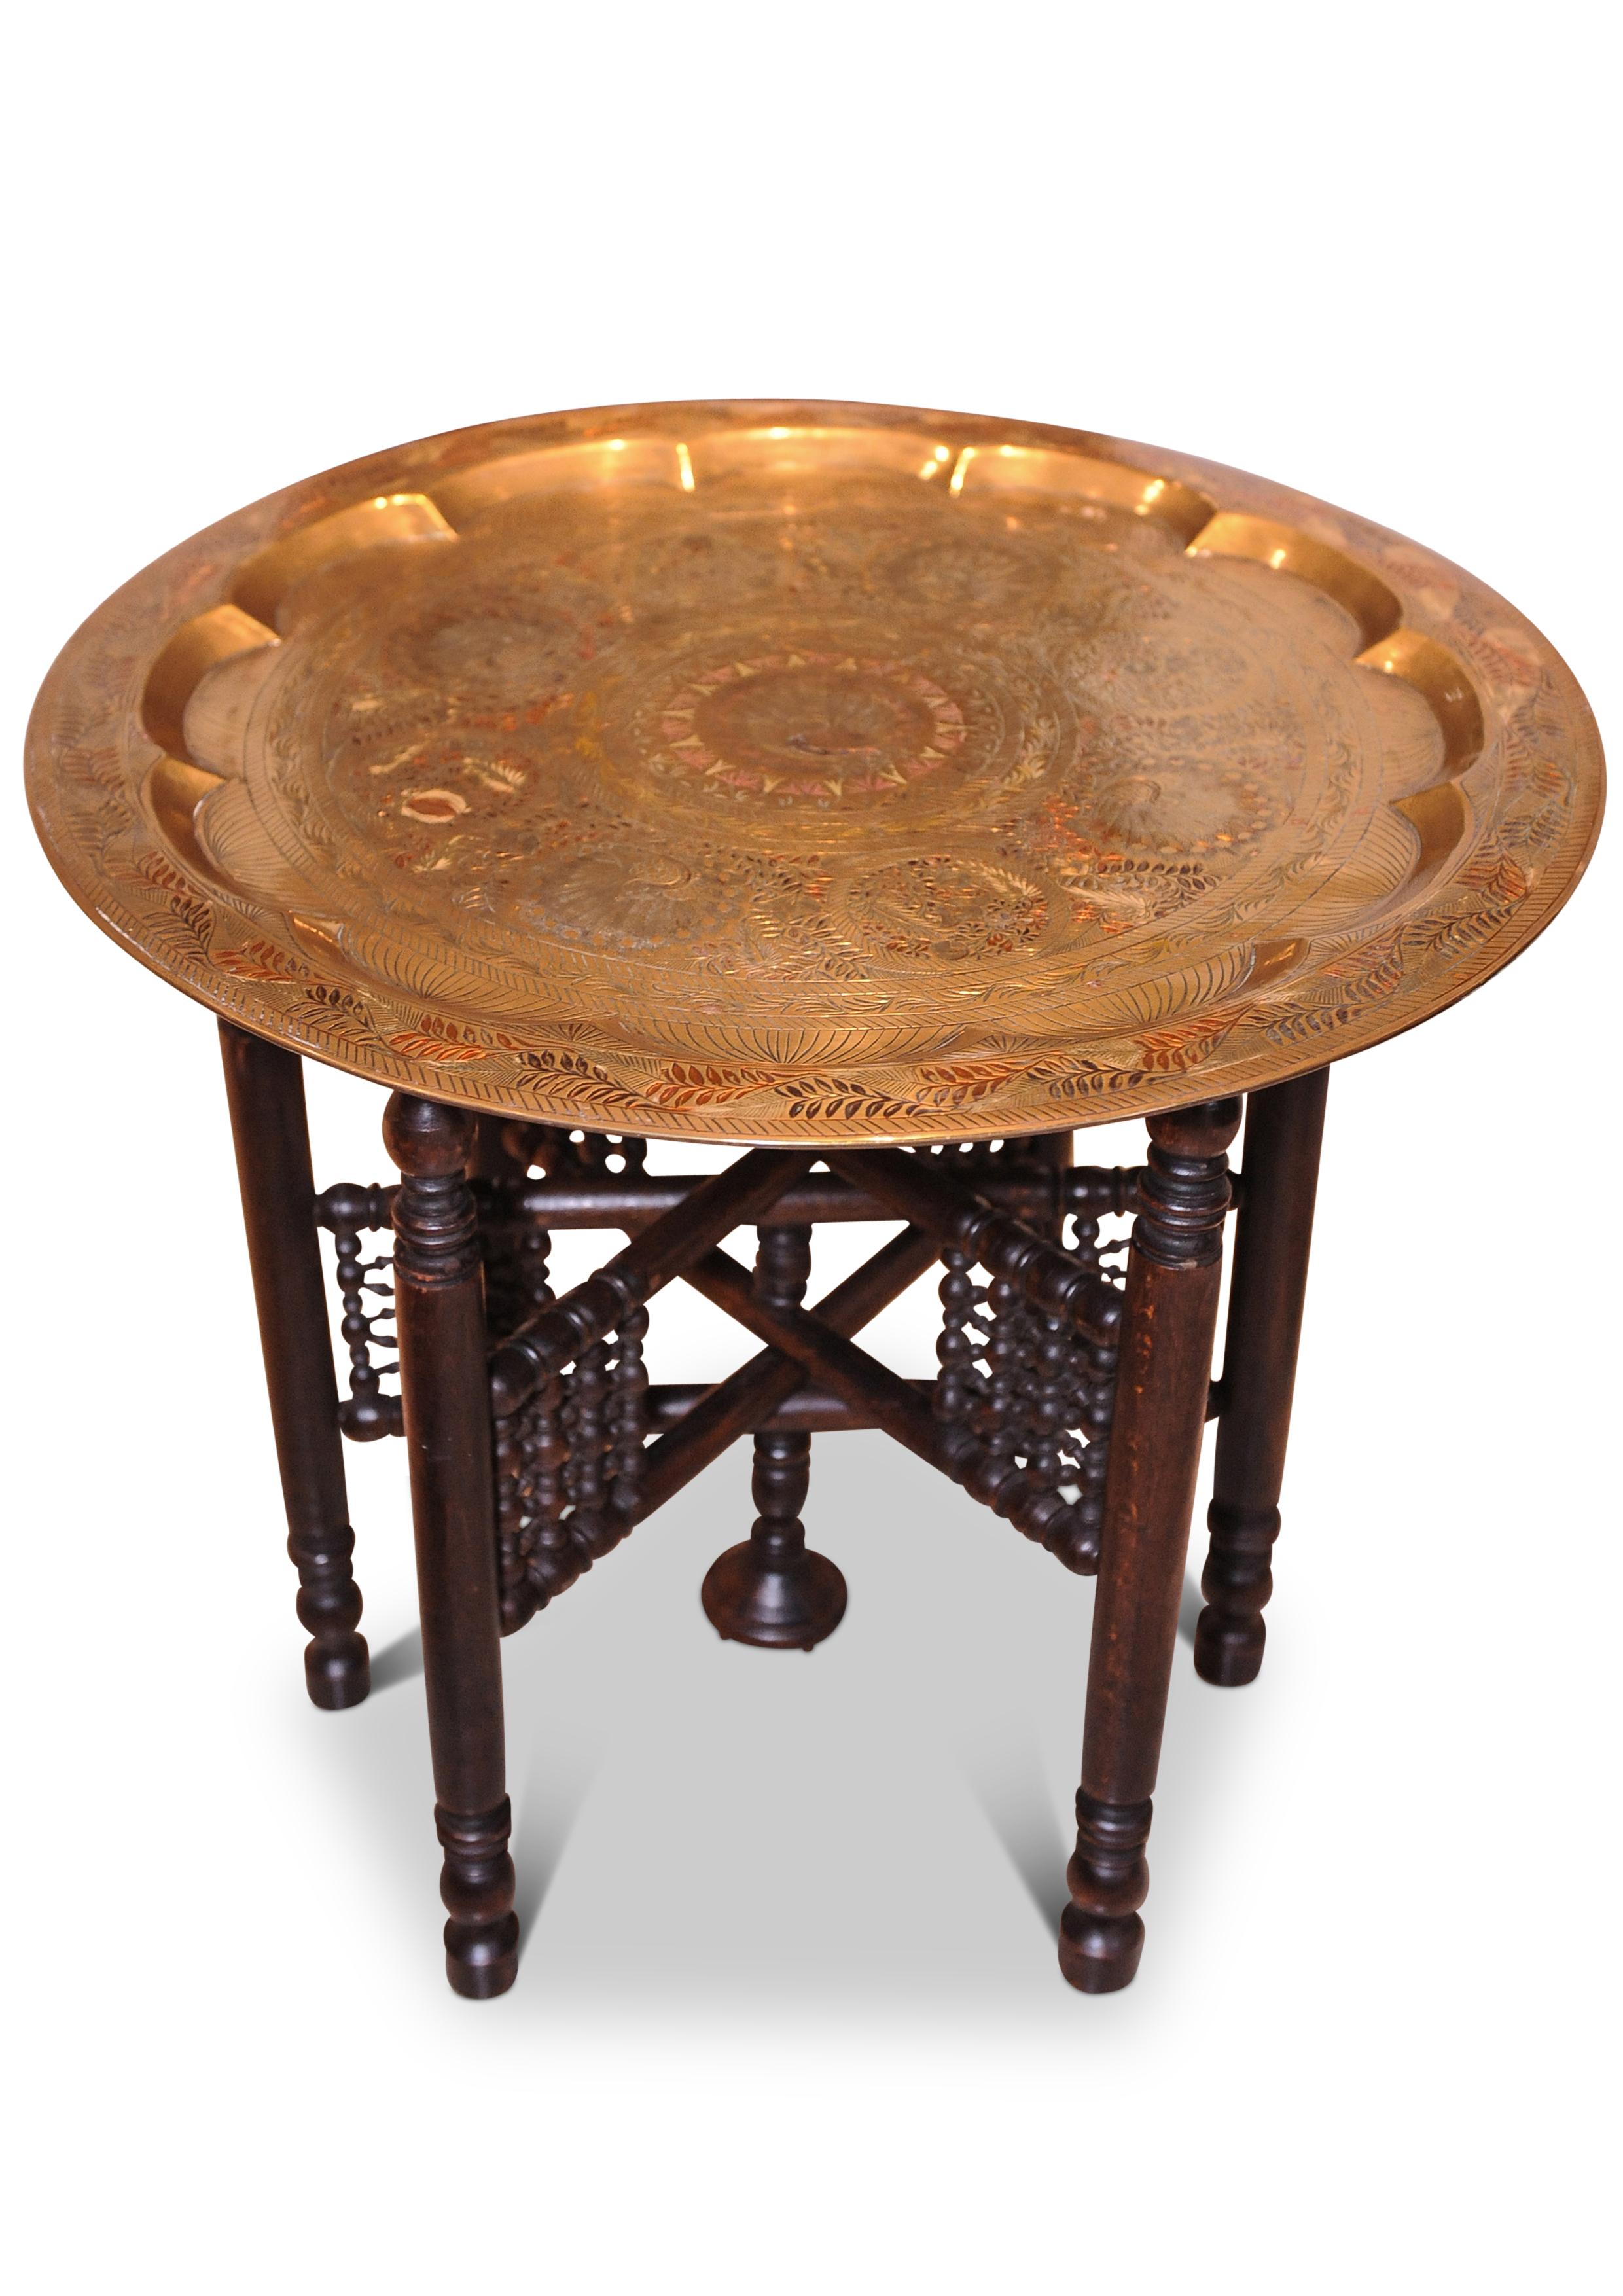 Table à thé en laiton et bois dur du début du 20e siècle, décorée de paons du Moyen-Orient
La table se plie.

.